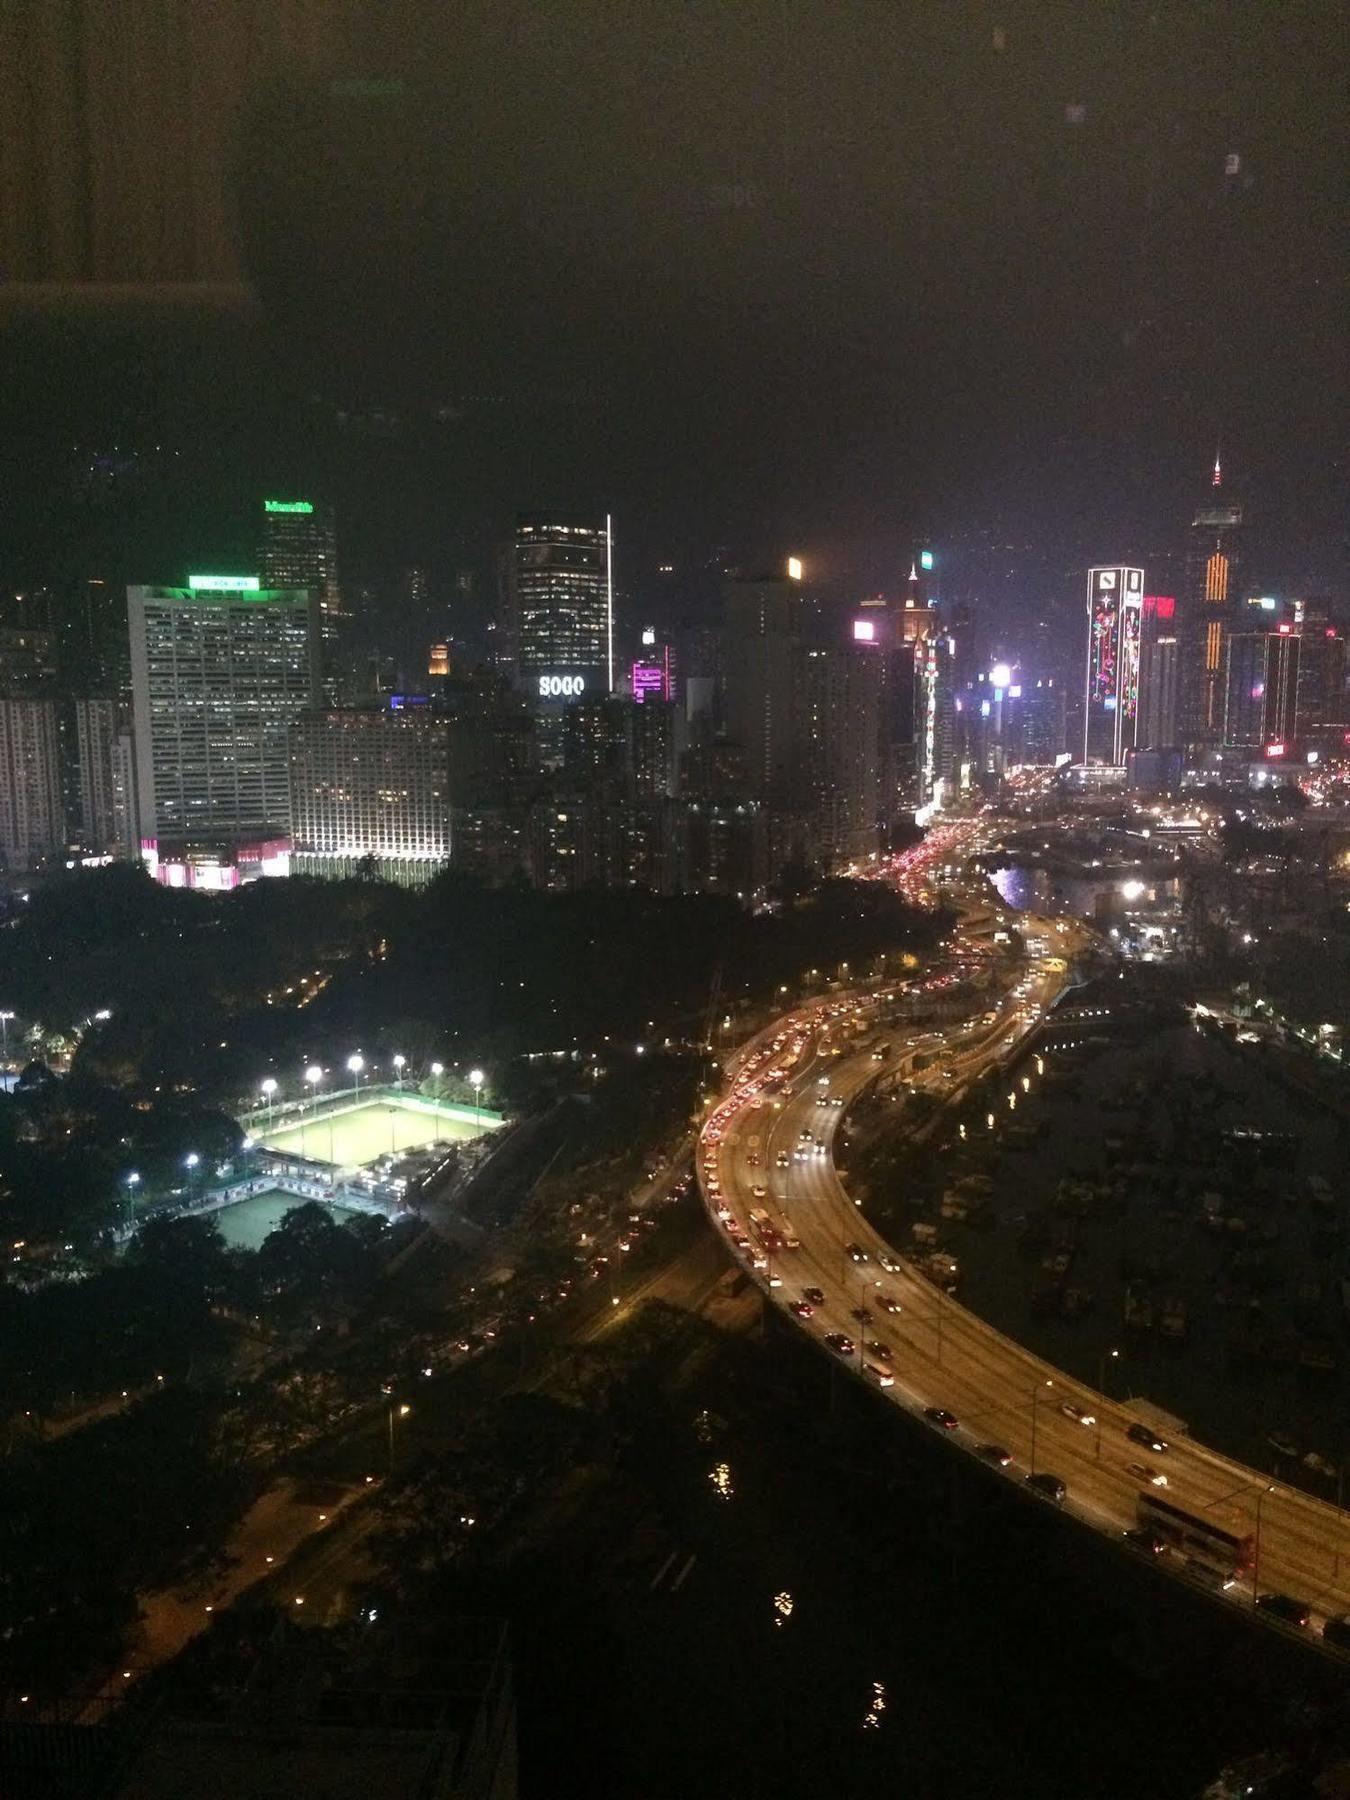 Twenty One Whitfield Aparthotel Hong Kong Luaran gambar